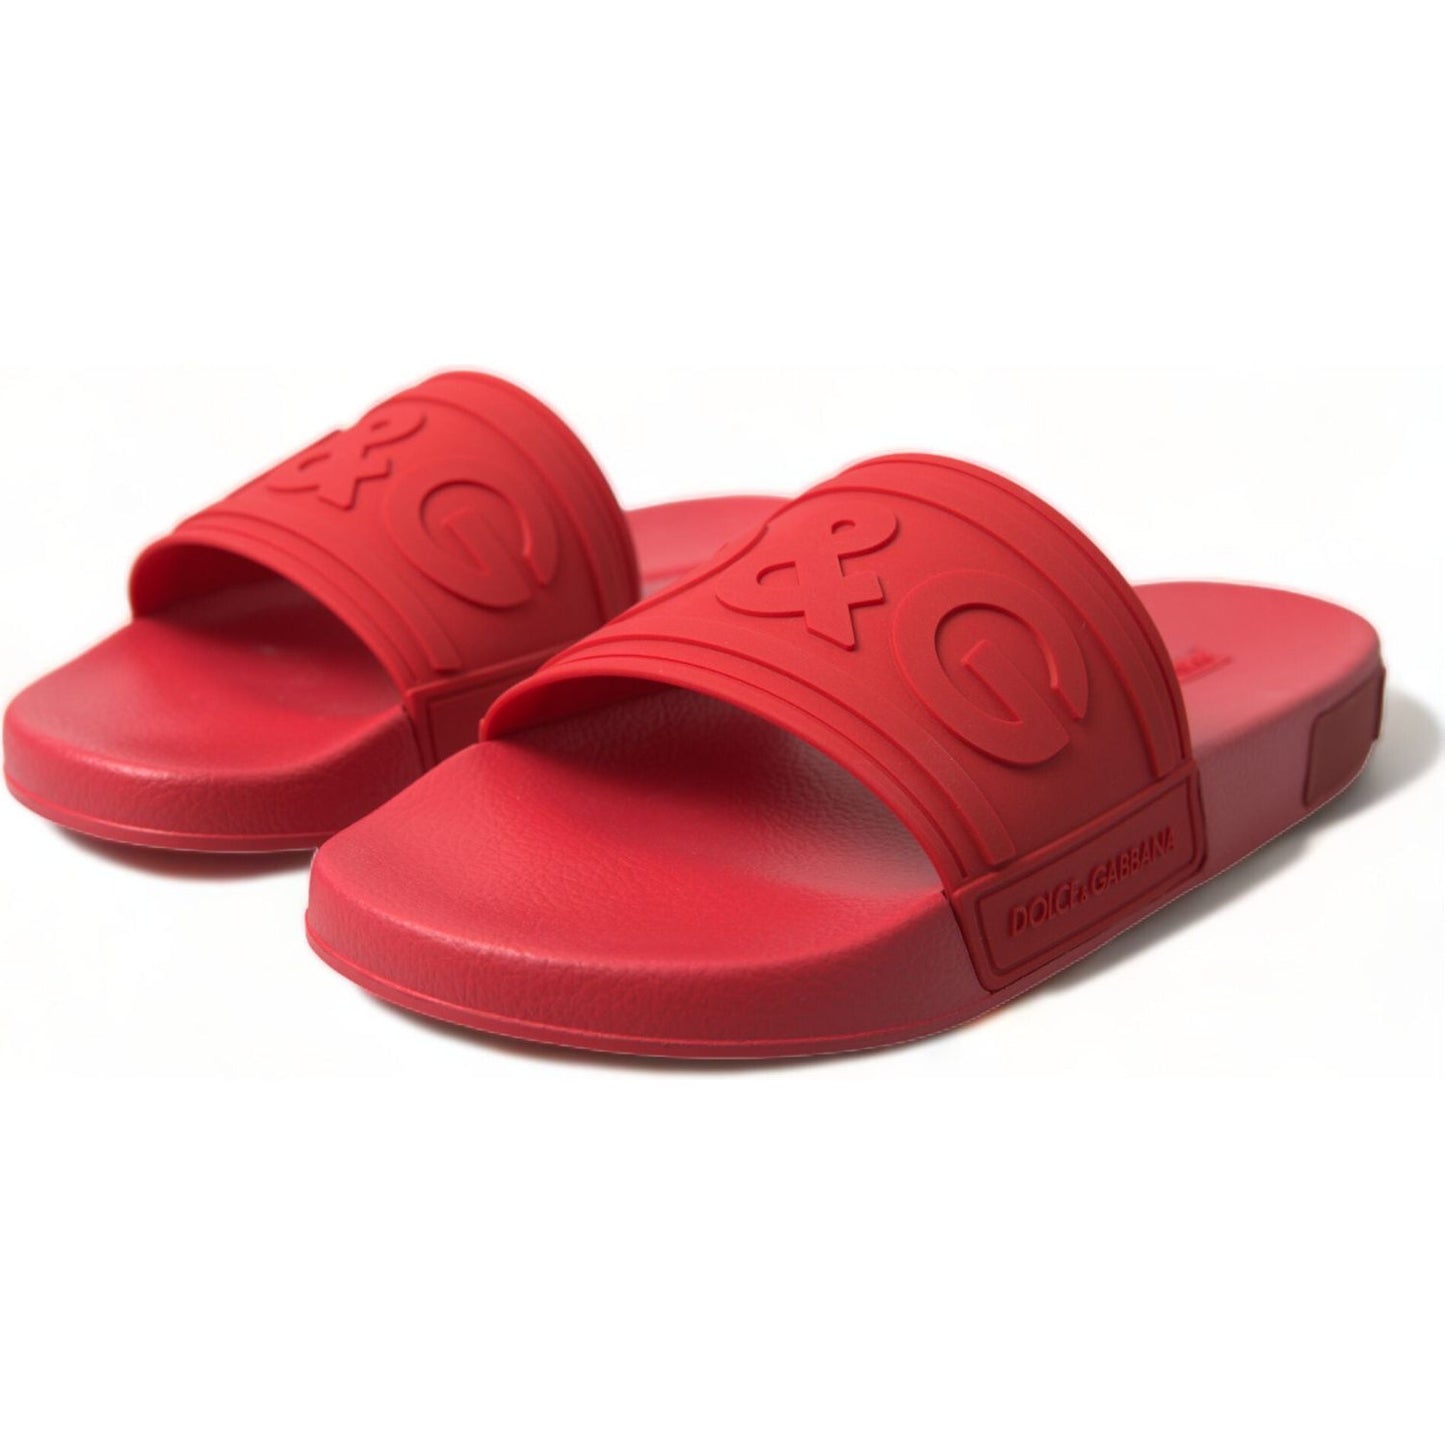 Dolce & Gabbana | Radiant Red Men's Slide Sandals| McRichard Designer Brands   